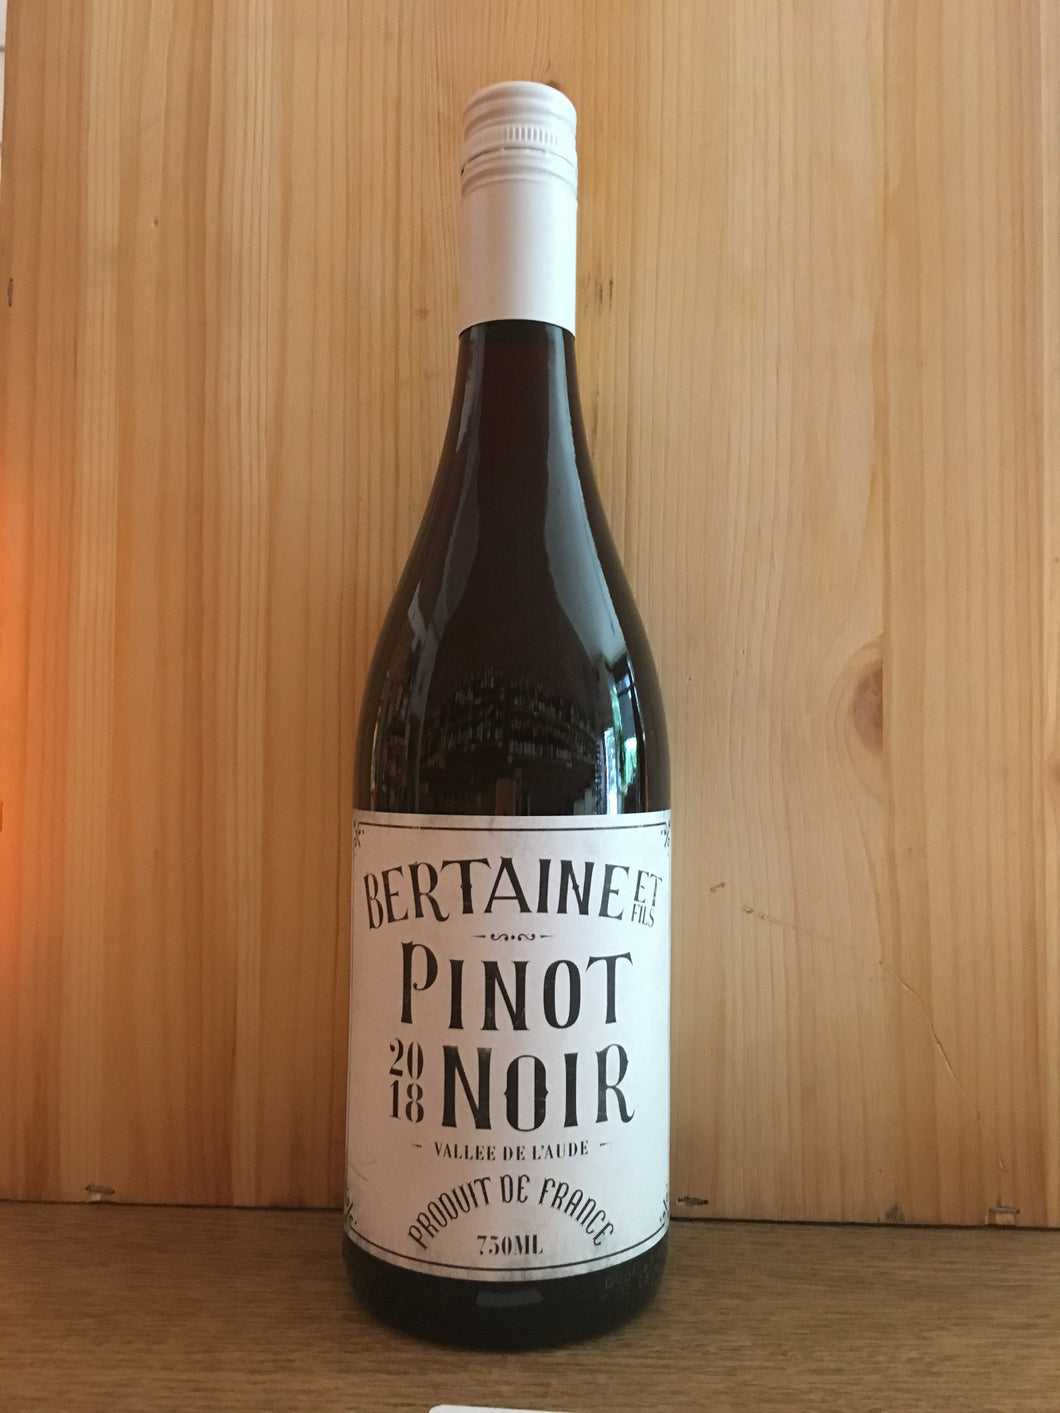 Bertaine Pinot Noir Aude Valley France 2019